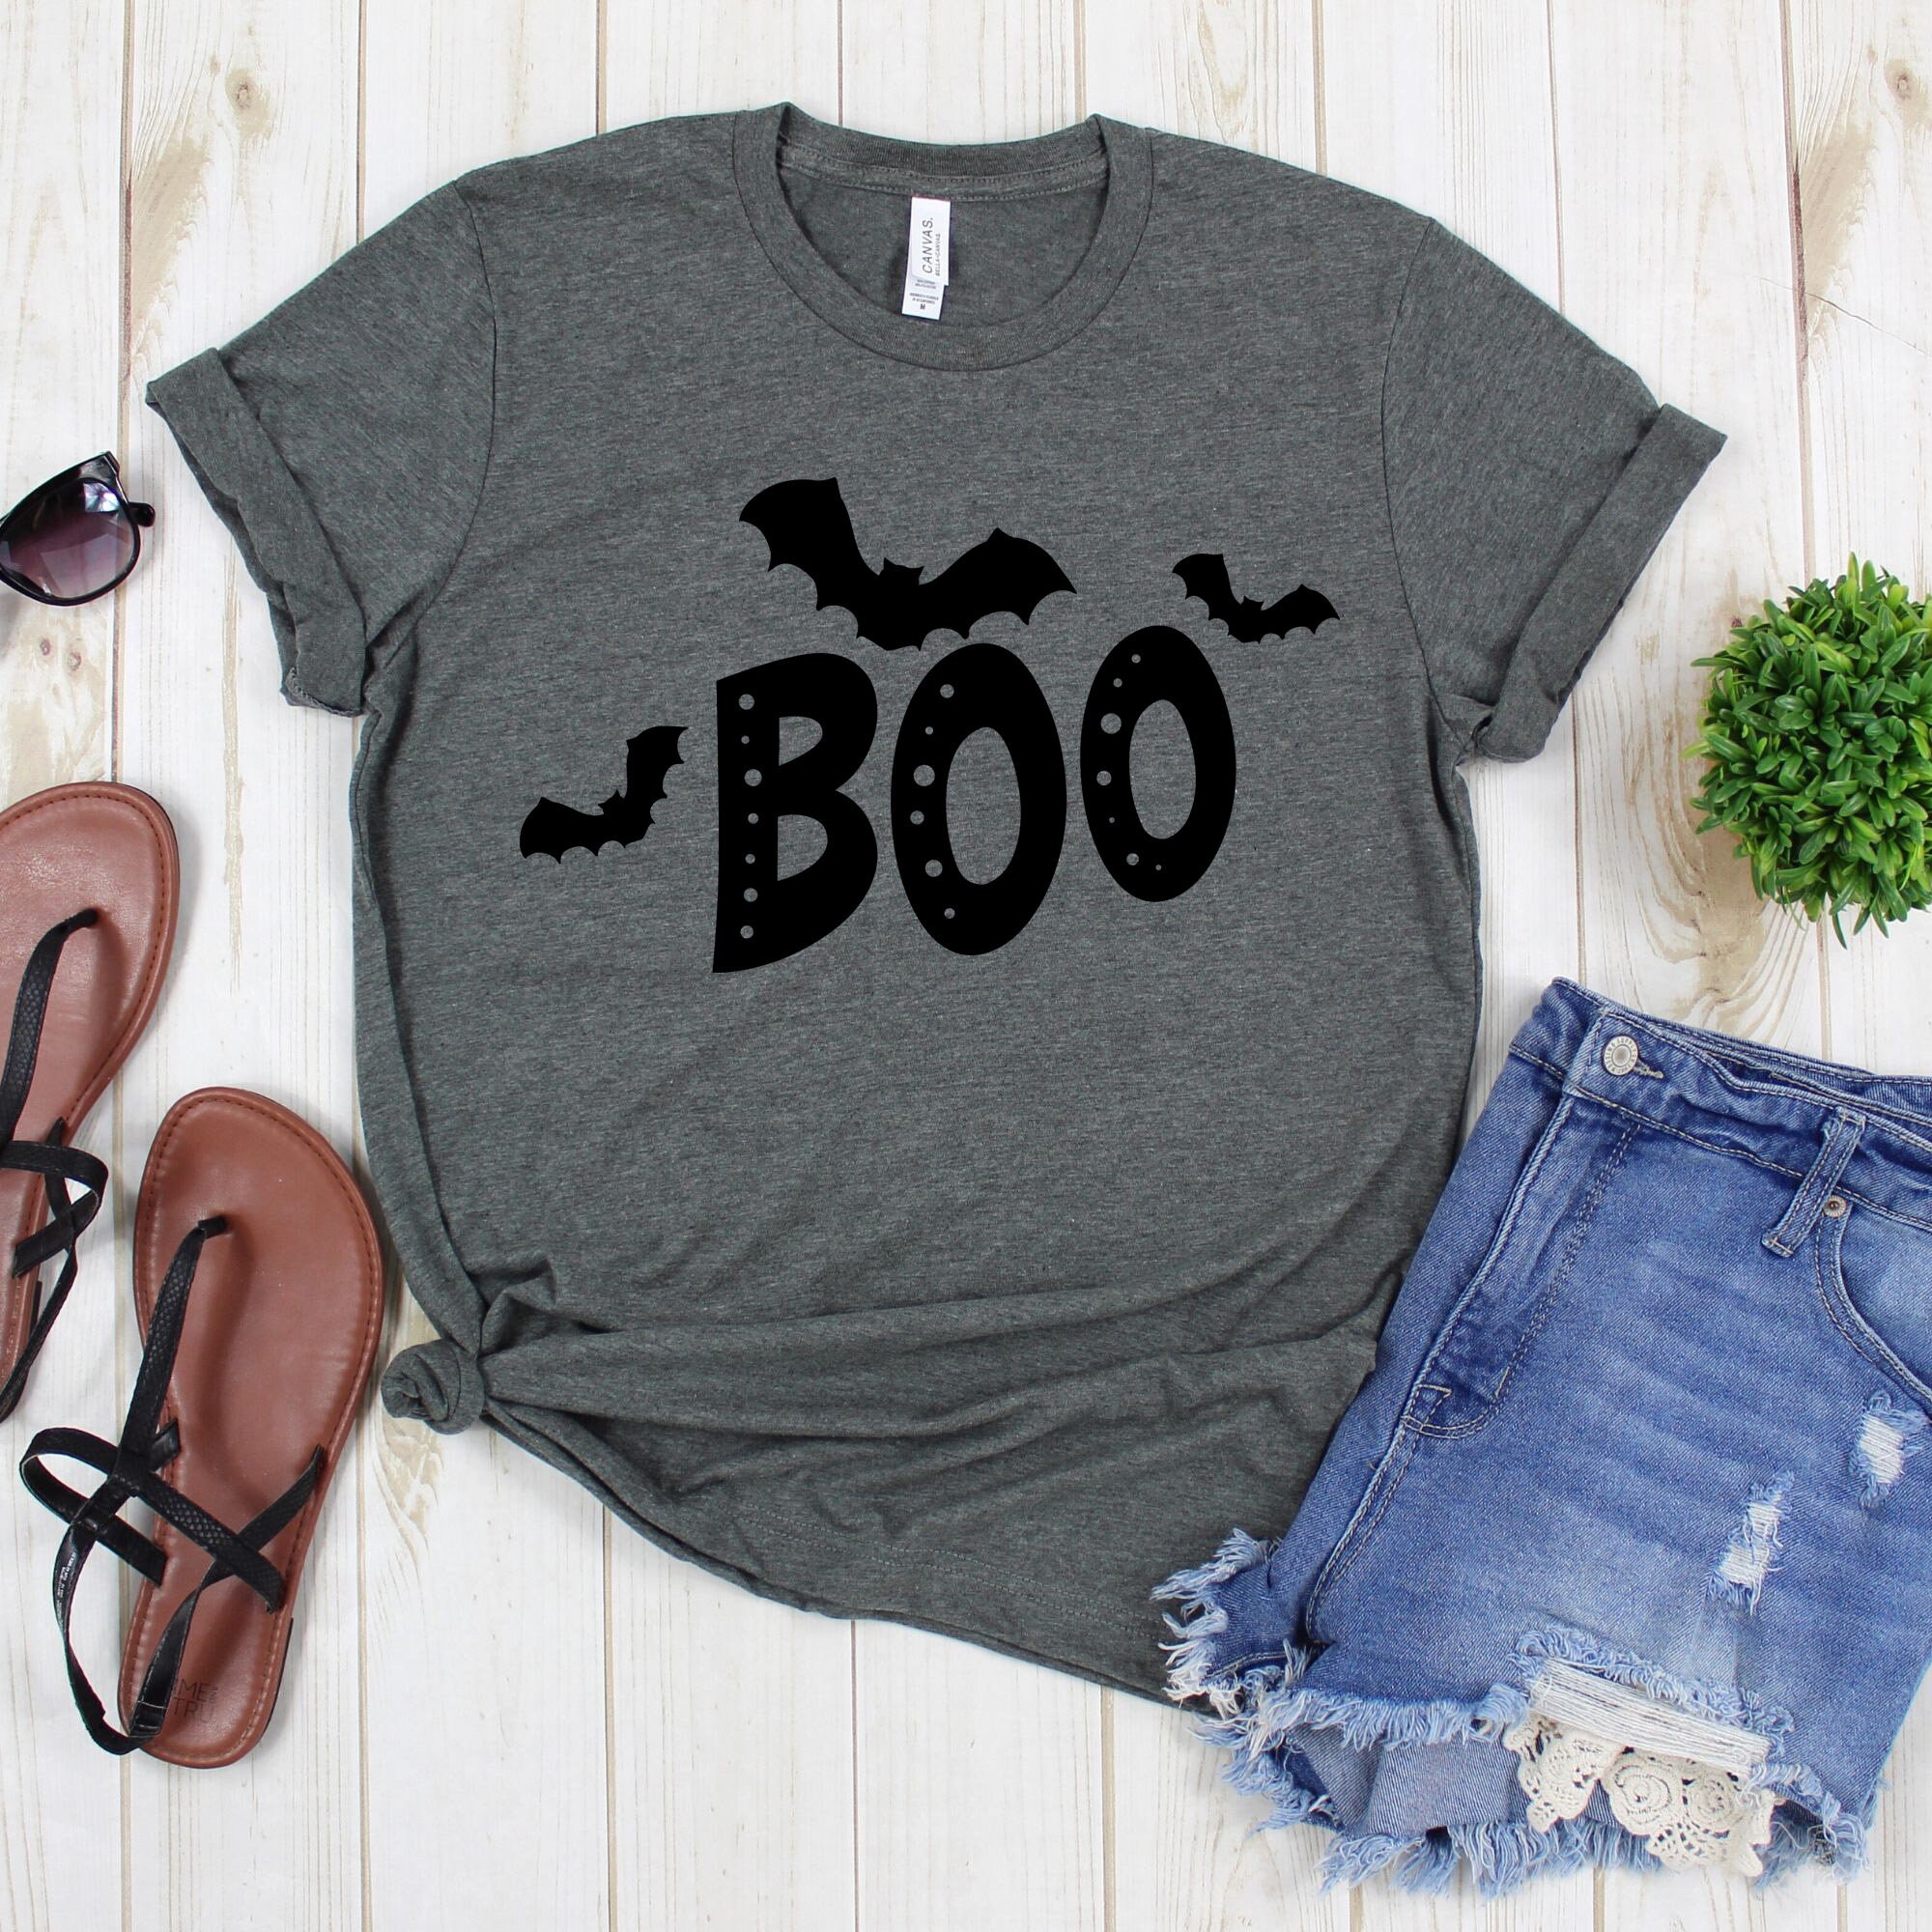 Boo Tee Shirt Boo Three Bats Boo T-shirt Halloween Tee | Etsy